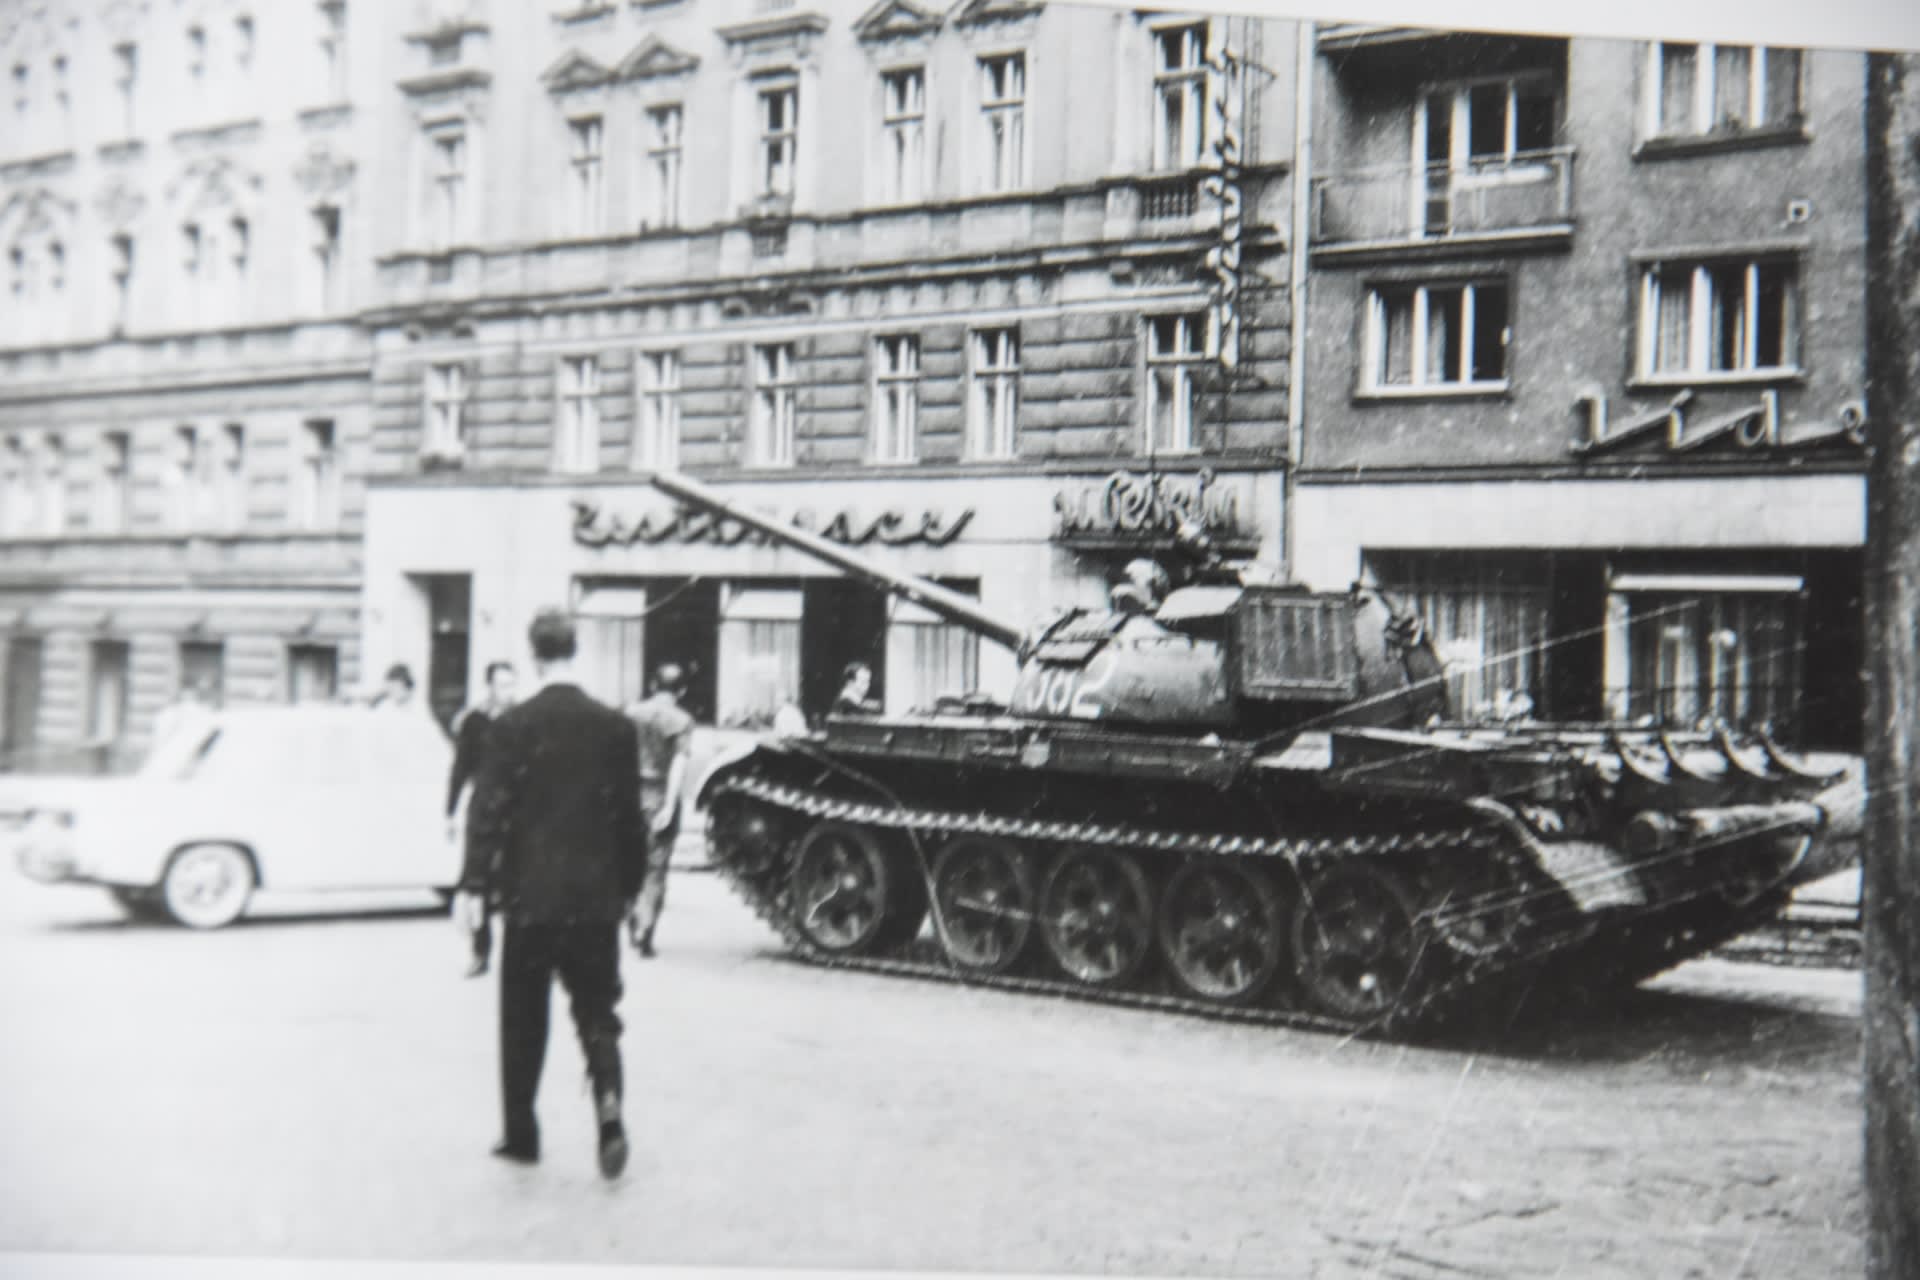 Tank určený k potlačování demostrací v srpnu 1969